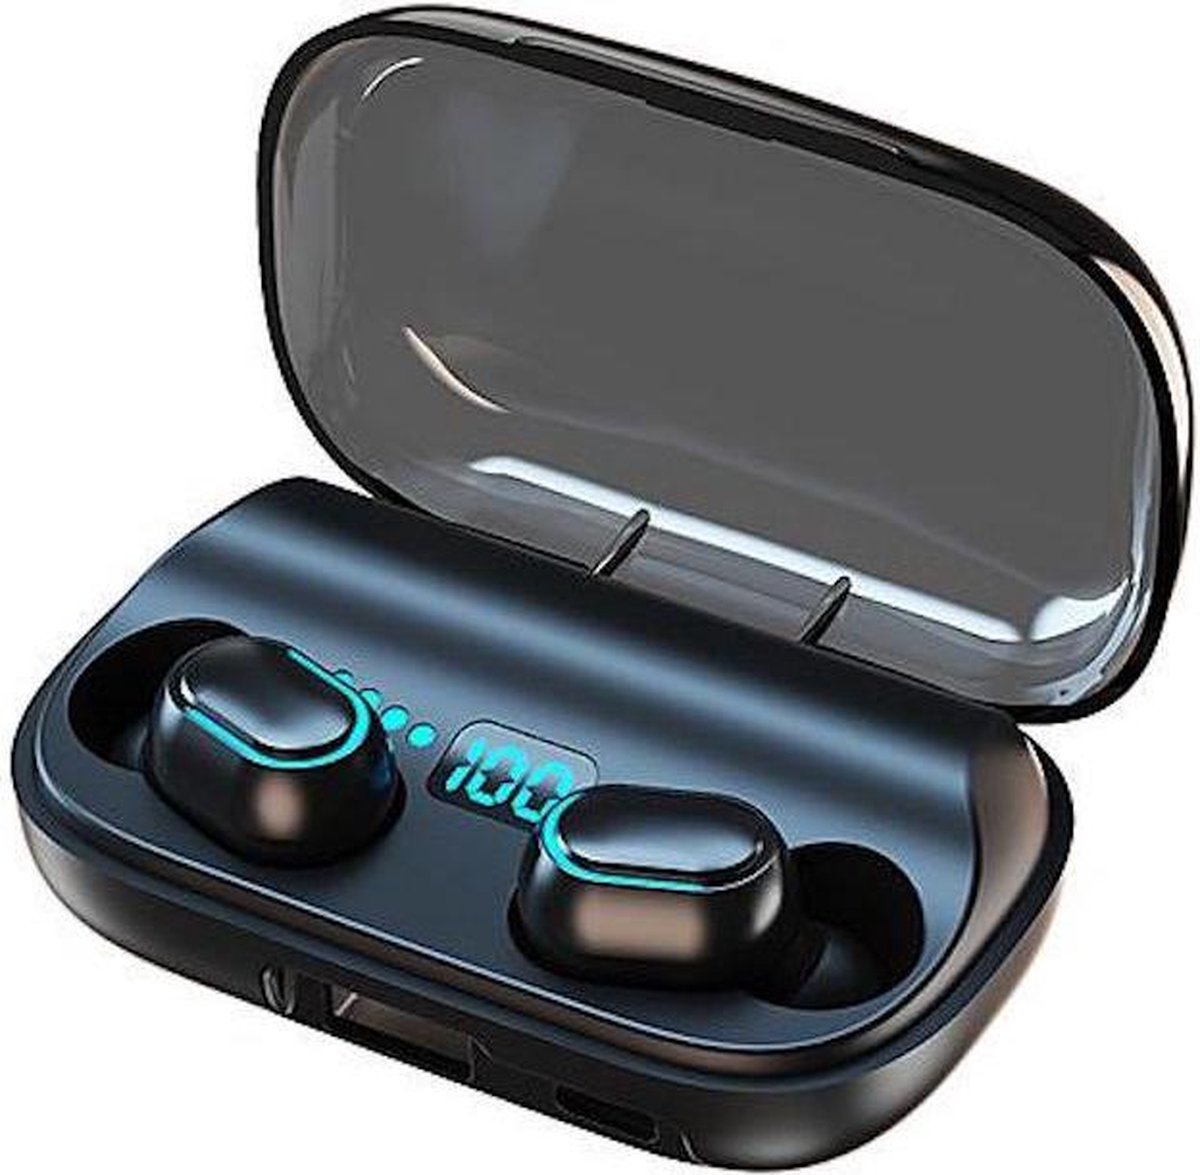 TWS - Draadloze oortjes / in-ear oordopjes - Bluetooth Draadloze buds - Luxe indicator - Geschikt voor alle smartphones o.a Samsung & Iphone, airpods, galaxy buds, huawei, sony - Zwart.- AANBIEDING!